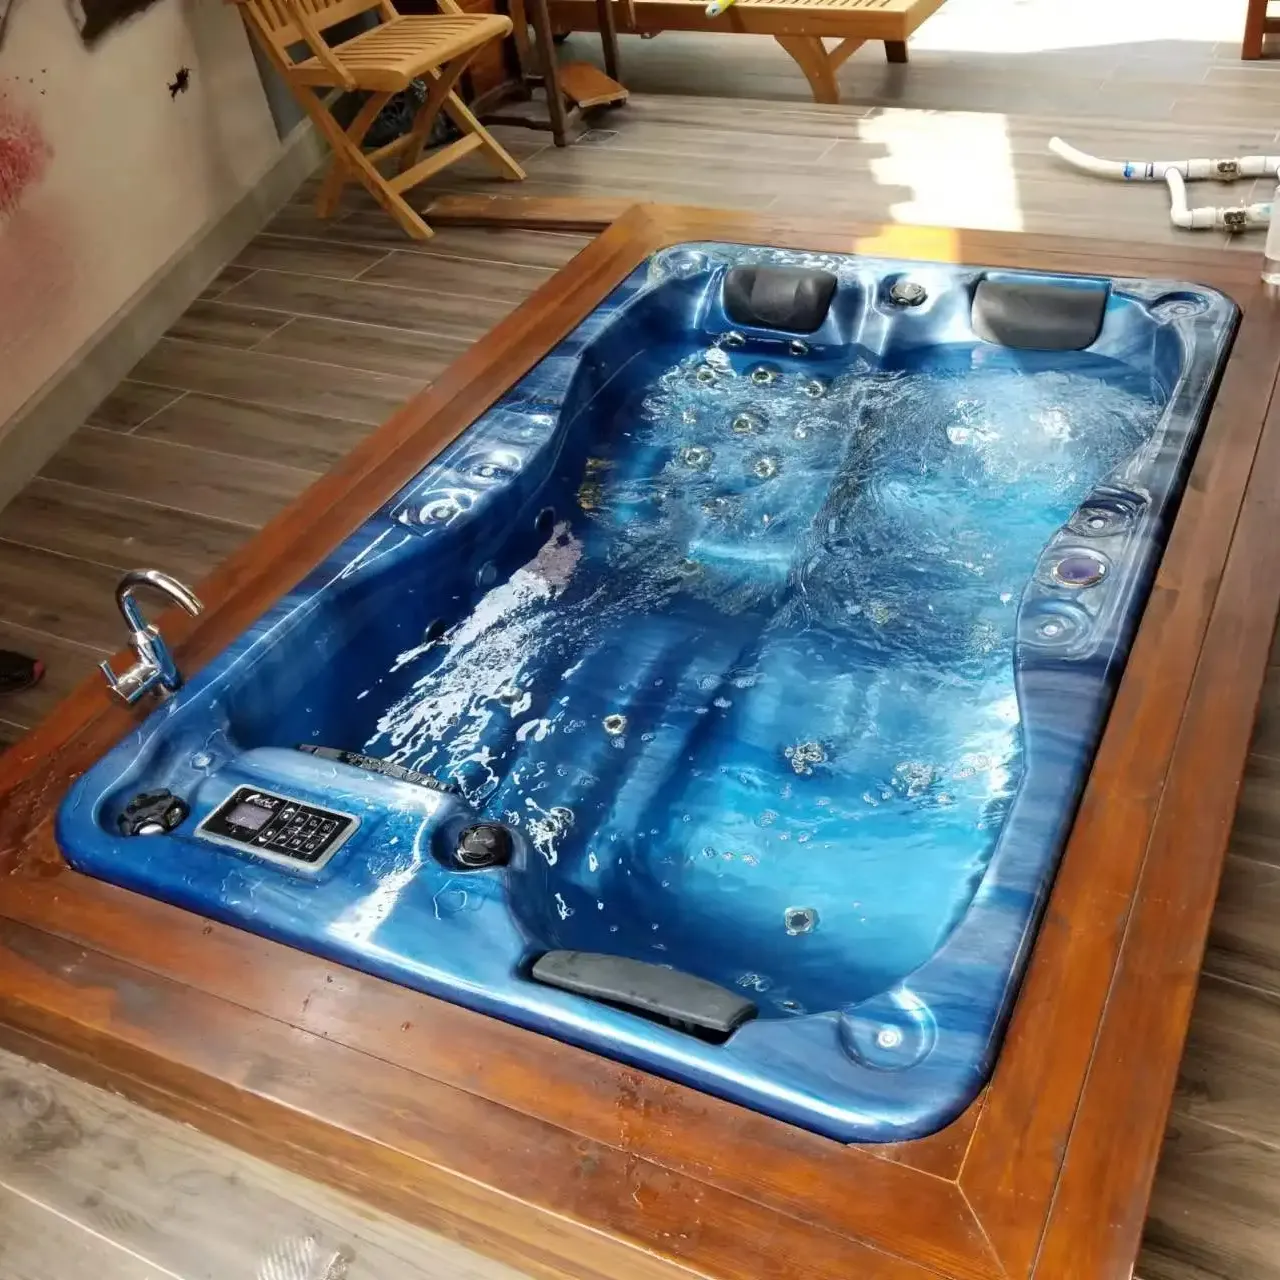 Lujosa bañera de hidromasaje Whirlpool bañeras de interior bañera de hidromasaje al aire libre